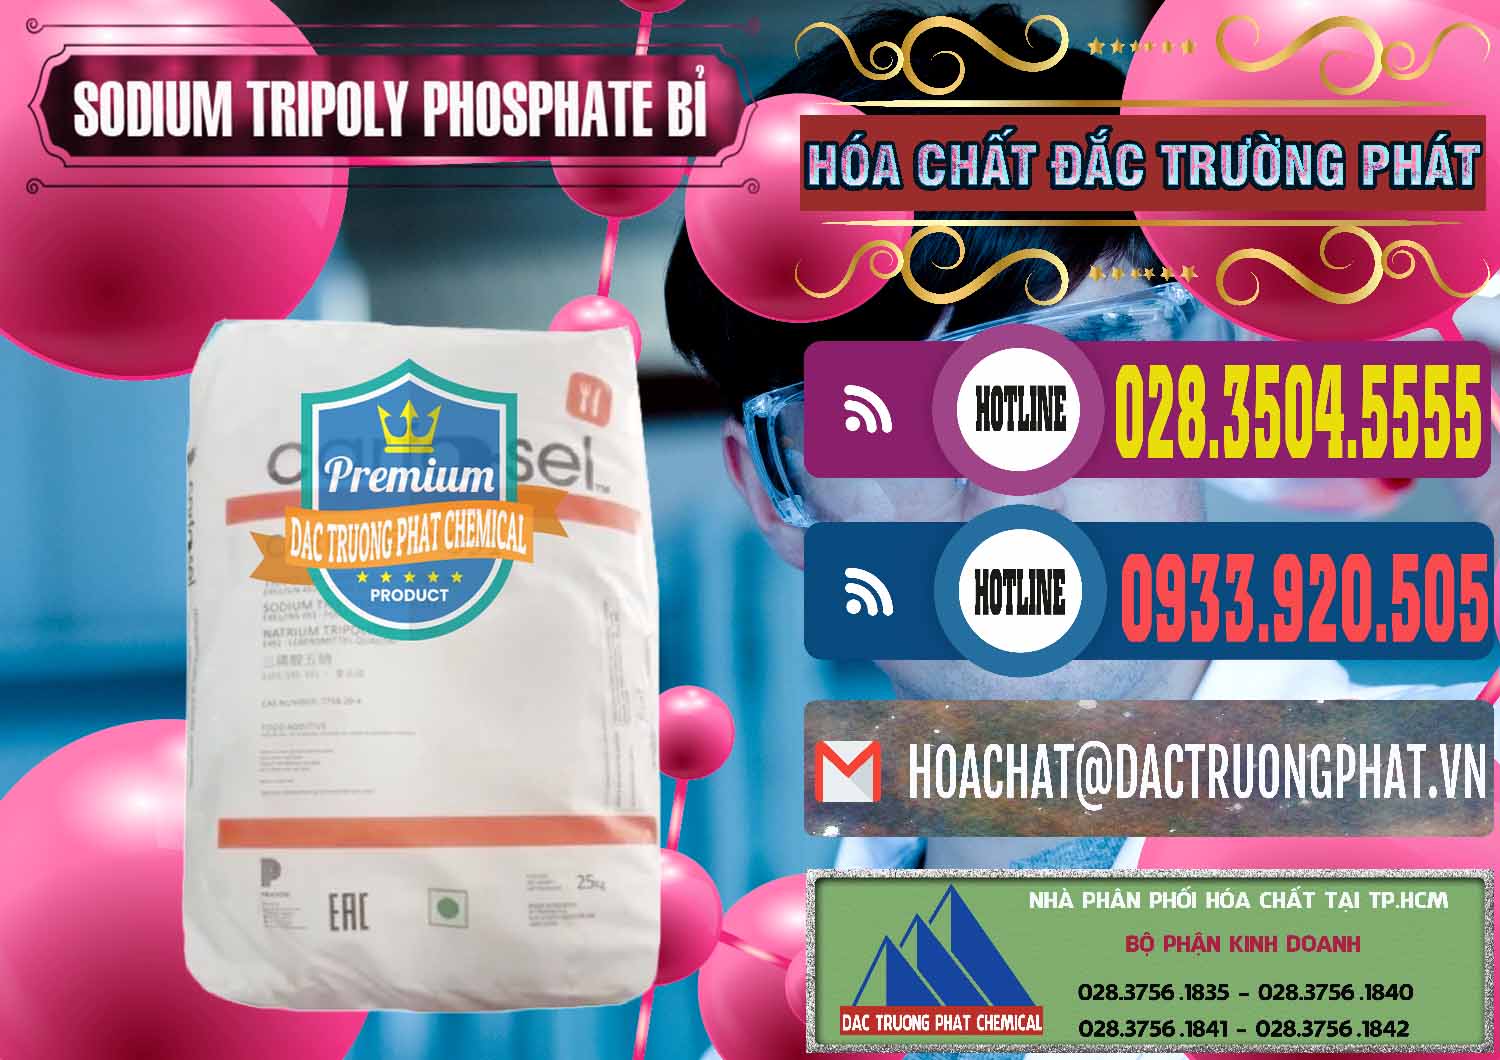 Công ty nhập khẩu và bán Sodium Tripoly Phosphate - STPP Carfosel 991 Bỉ Belgium - 0429 - Cty chuyên nhập khẩu và cung cấp hóa chất tại TP.HCM - muabanhoachat.com.vn